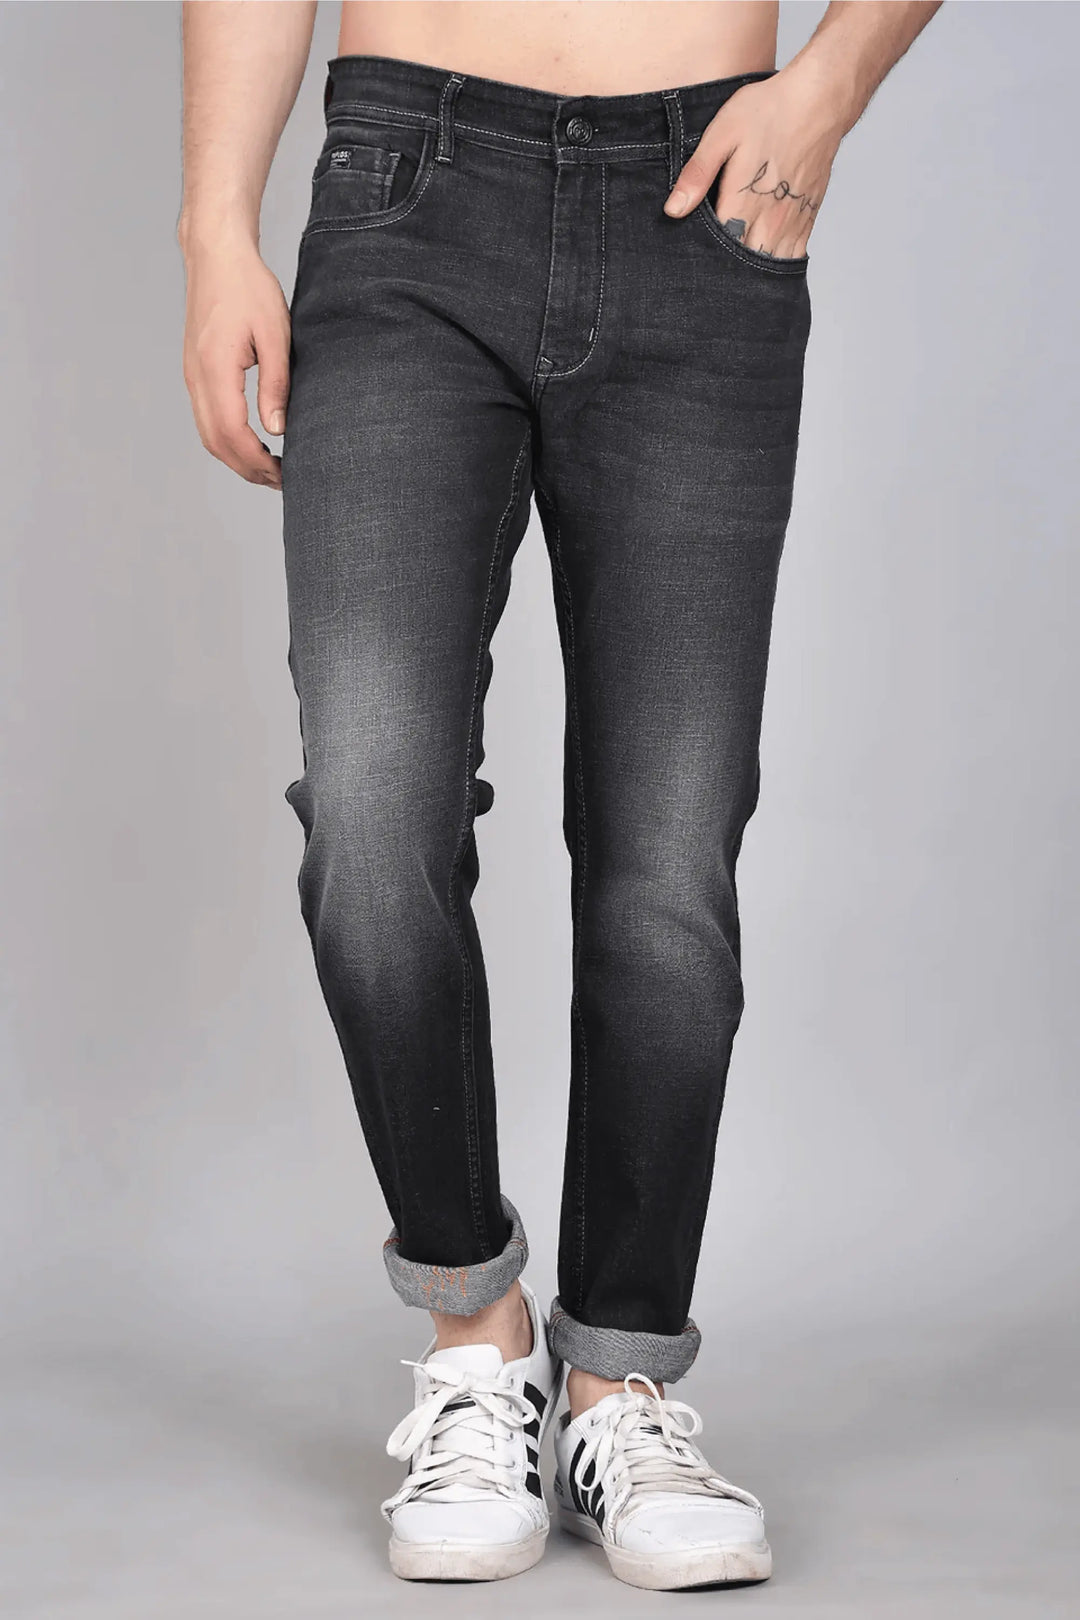 Slim Fit Grey Black Denim Jeans For Men - Peplos Jeans 